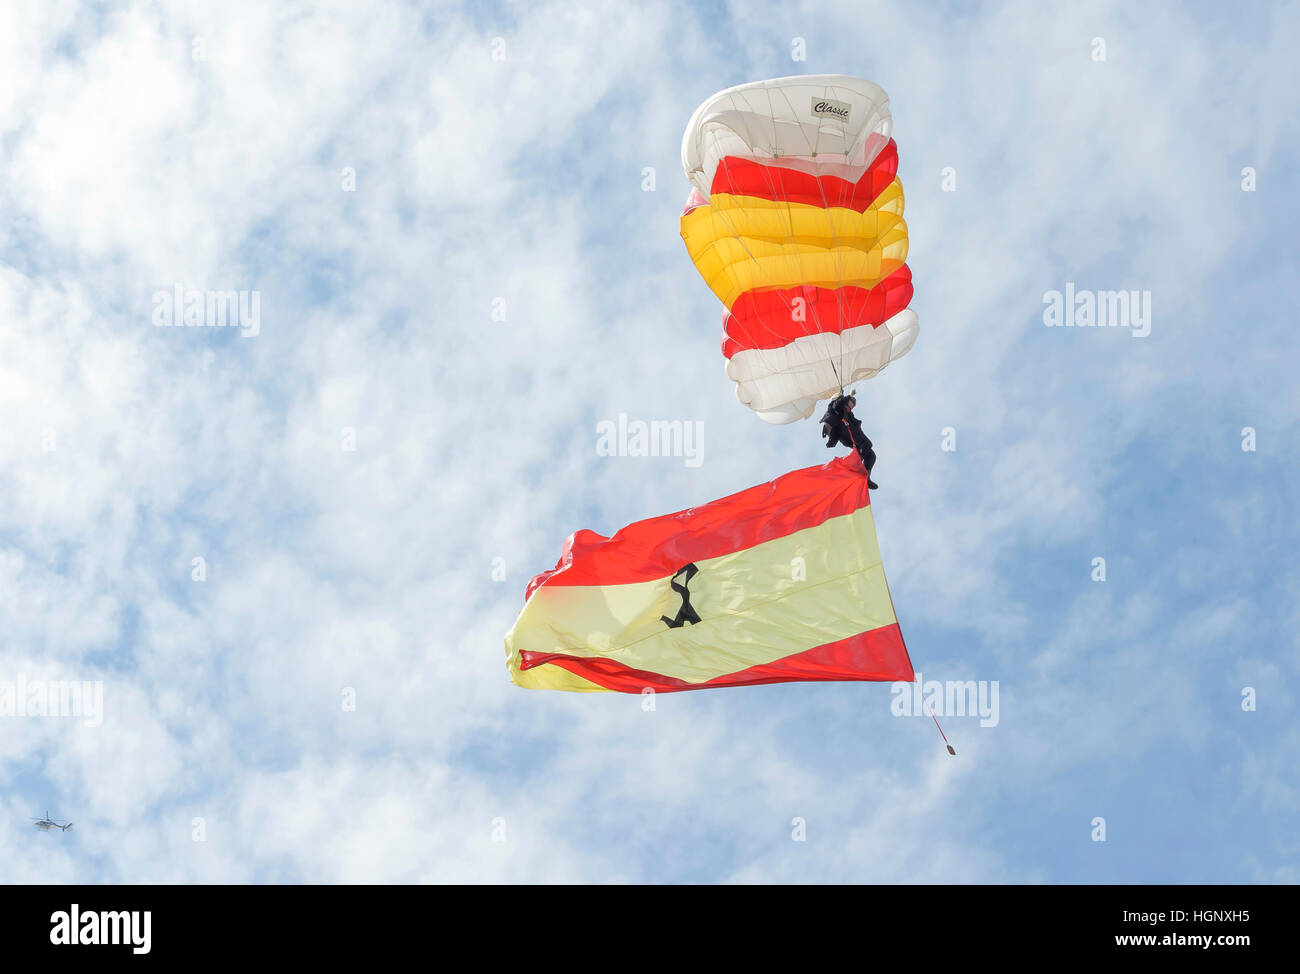 Soldato dell'esercito spagnolo, ha scavalcato da un elicottero, durante una esibizione aerea. Bandiera spagnola. Foto Stock